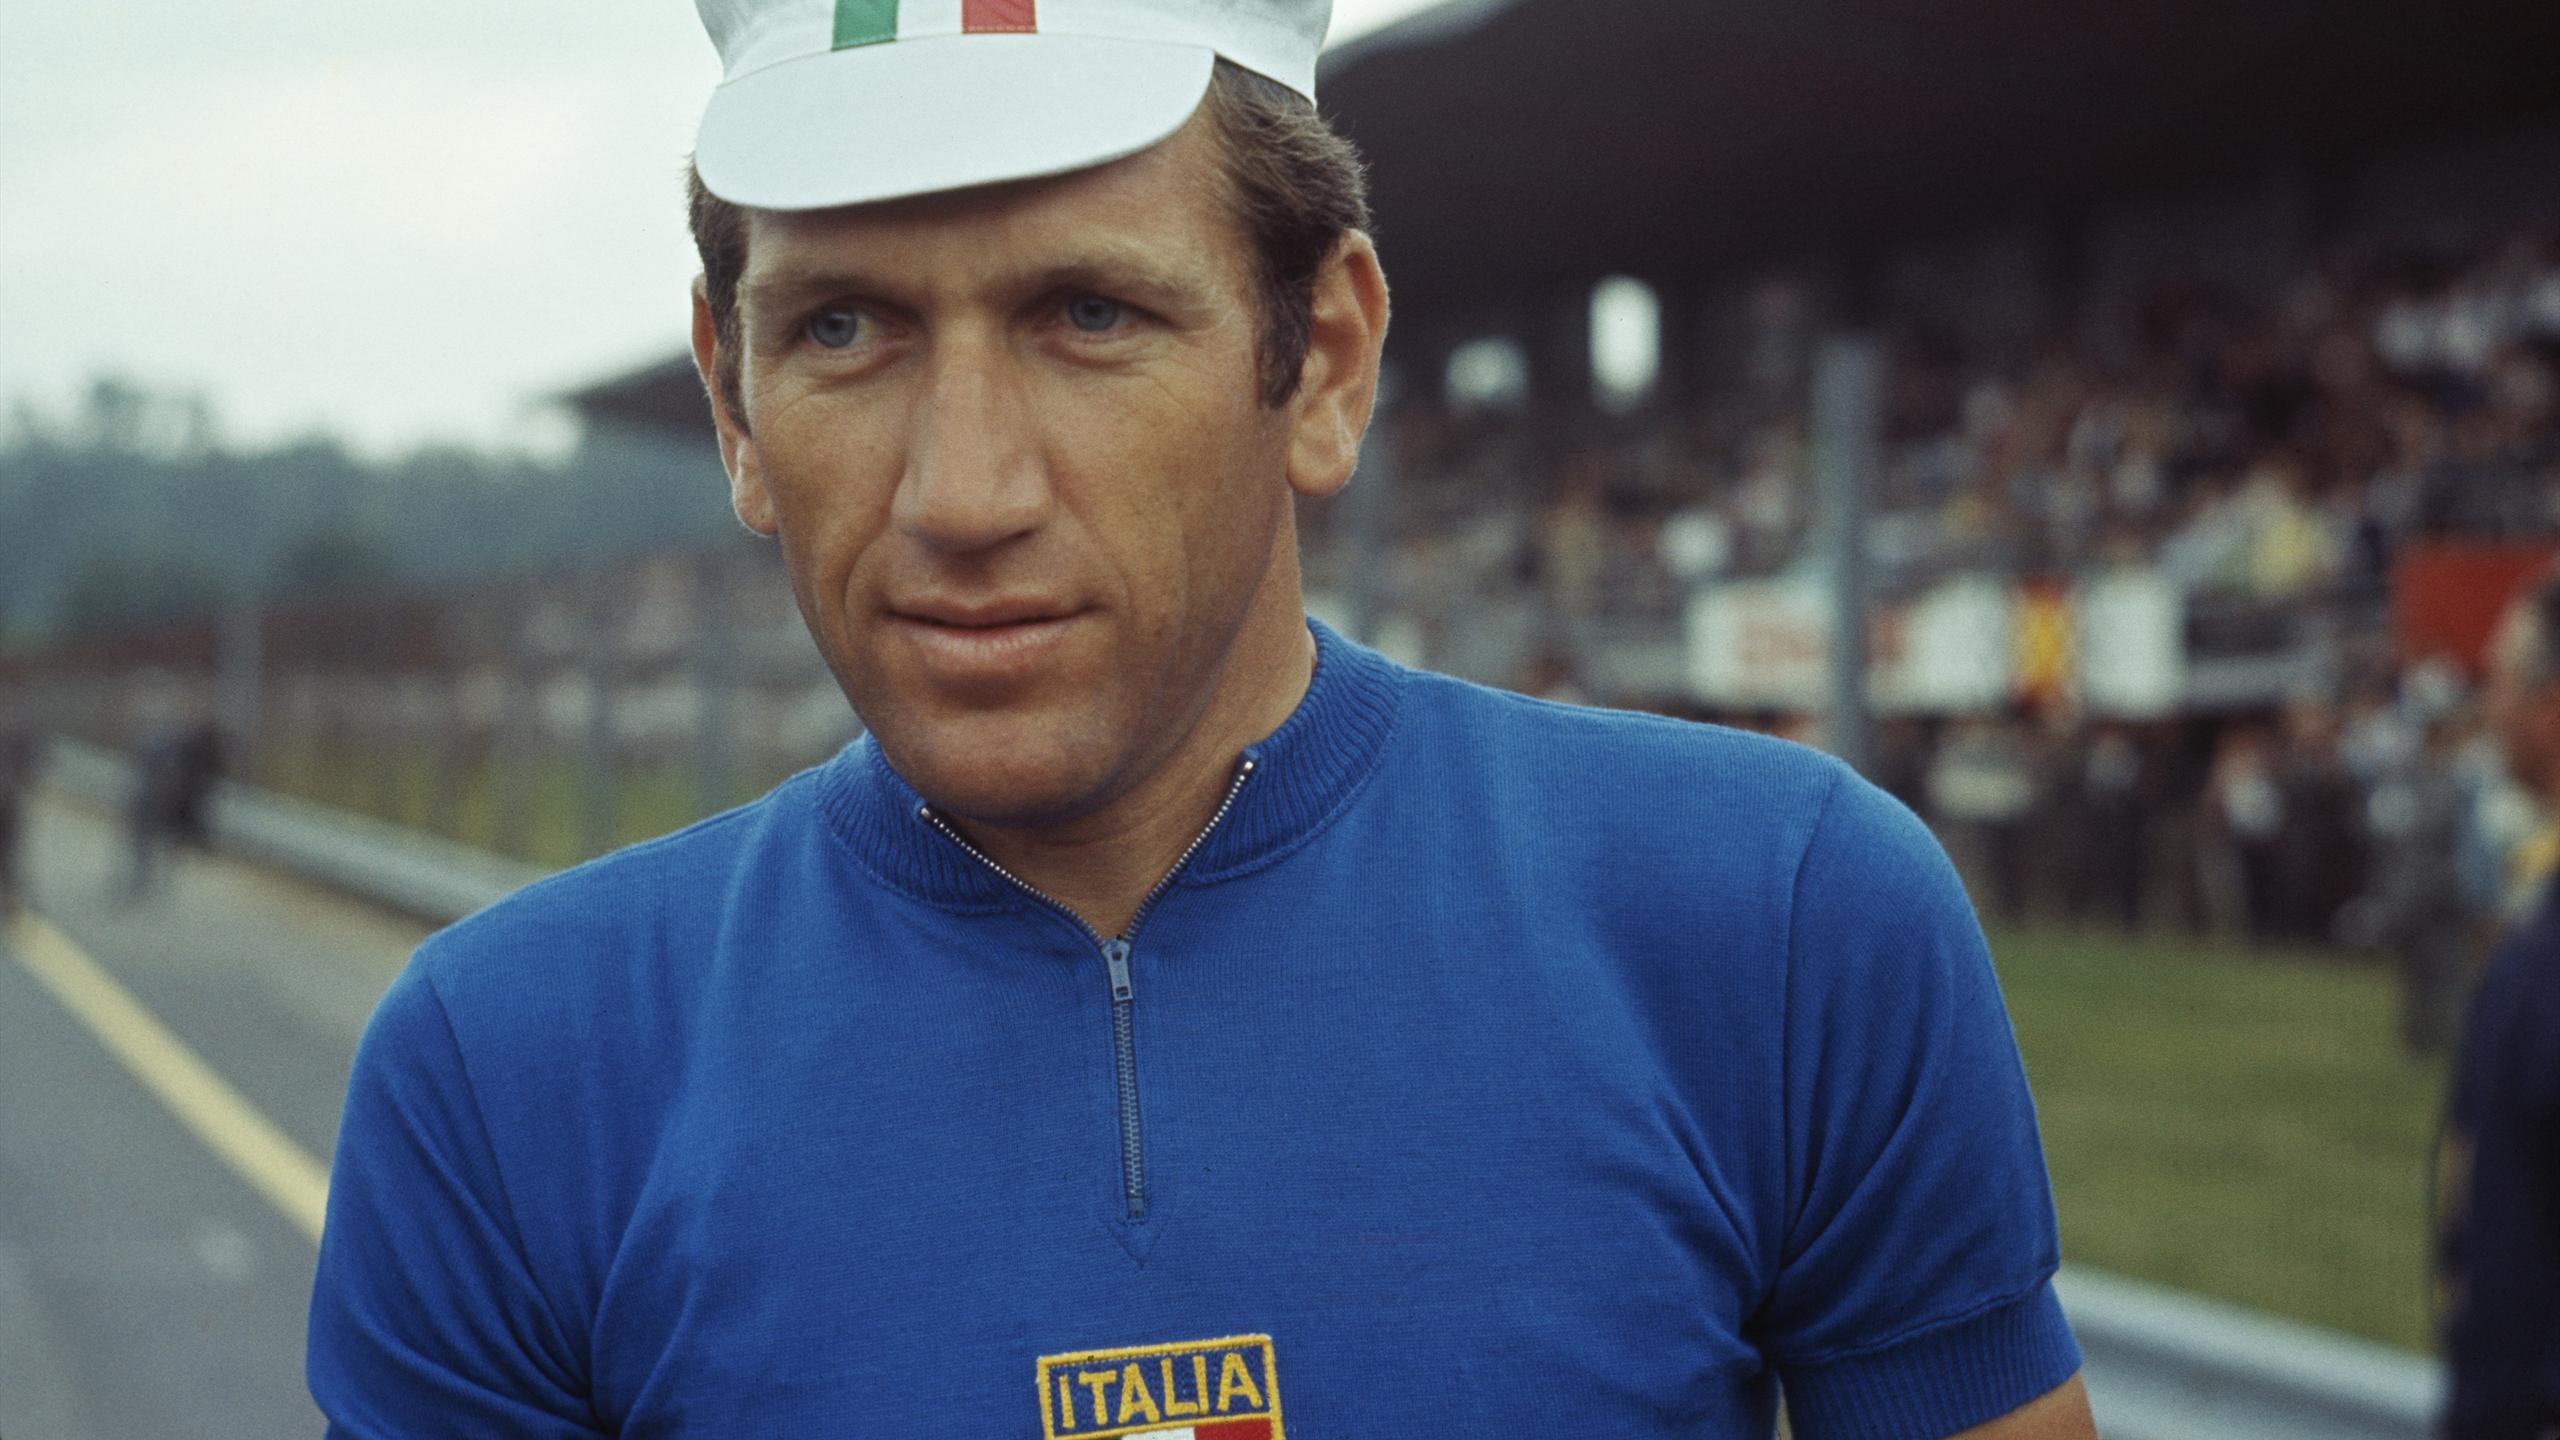 Addio Vittorio Adorni, re del Giro e campione del Mondo